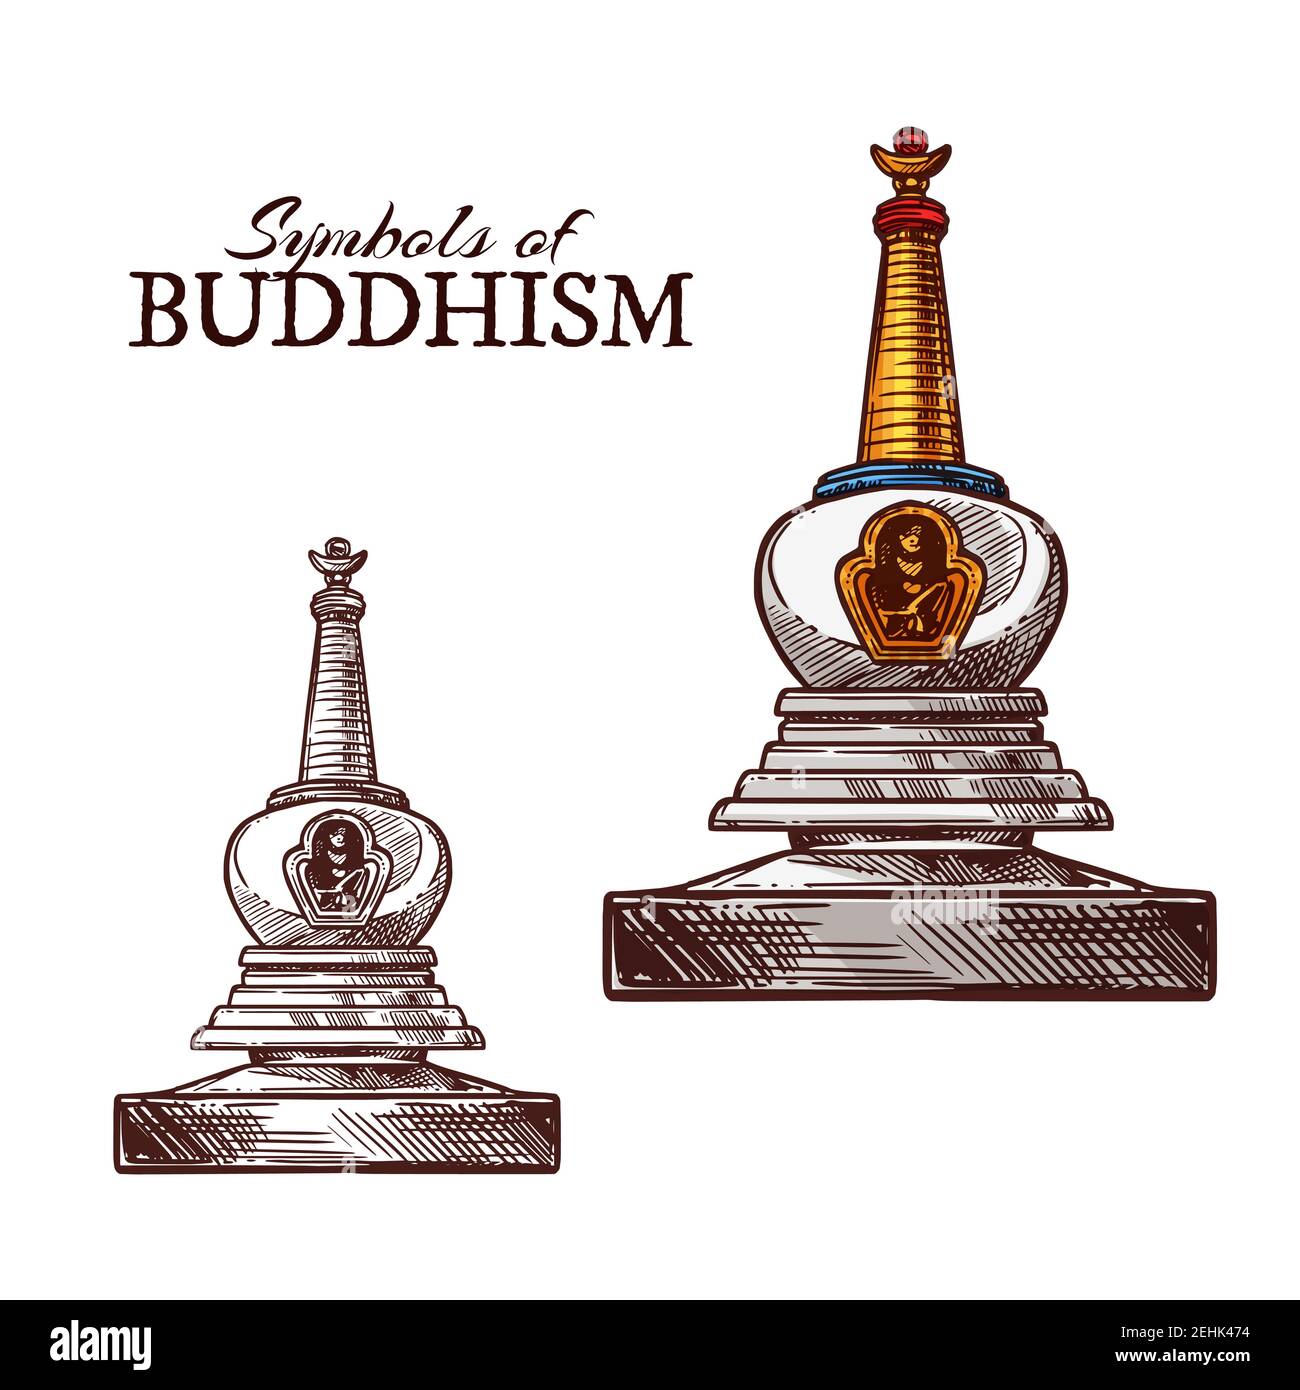 Buddhismus Religion Symbol Skizze der buddhistischen Mönch Stupa. Altes Tempelgebäude mit Reliquien für Mönche Meditation isoliert Ikone. Asiatische Religion und Cul Stock Vektor